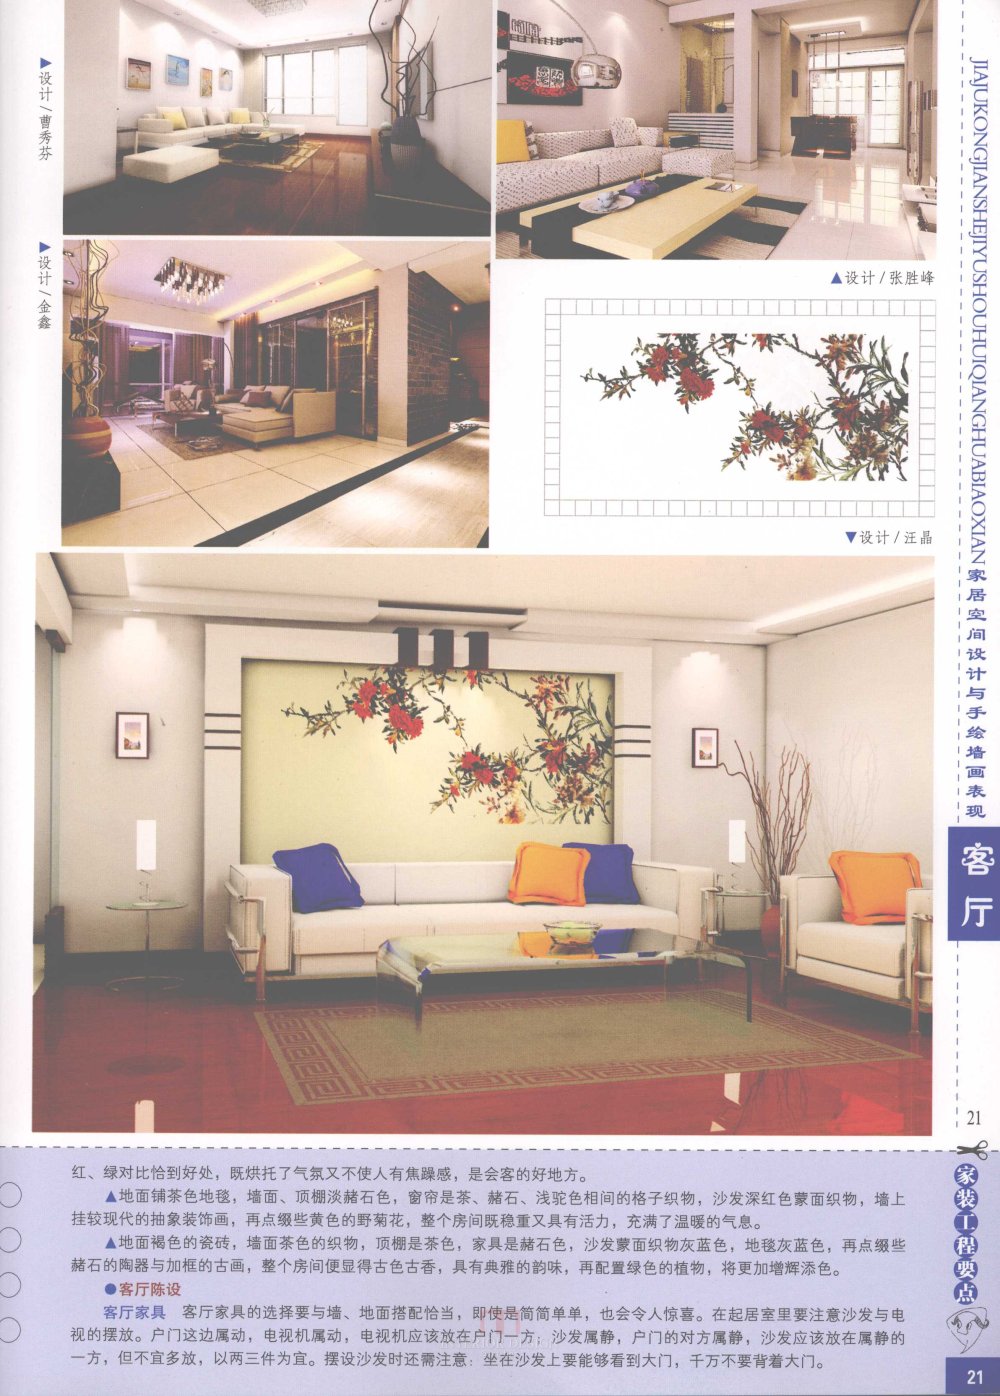 家居空间设计与手绘墙画表现客厅_家居空间设计与手绘墙画表现客厅-23.jpg